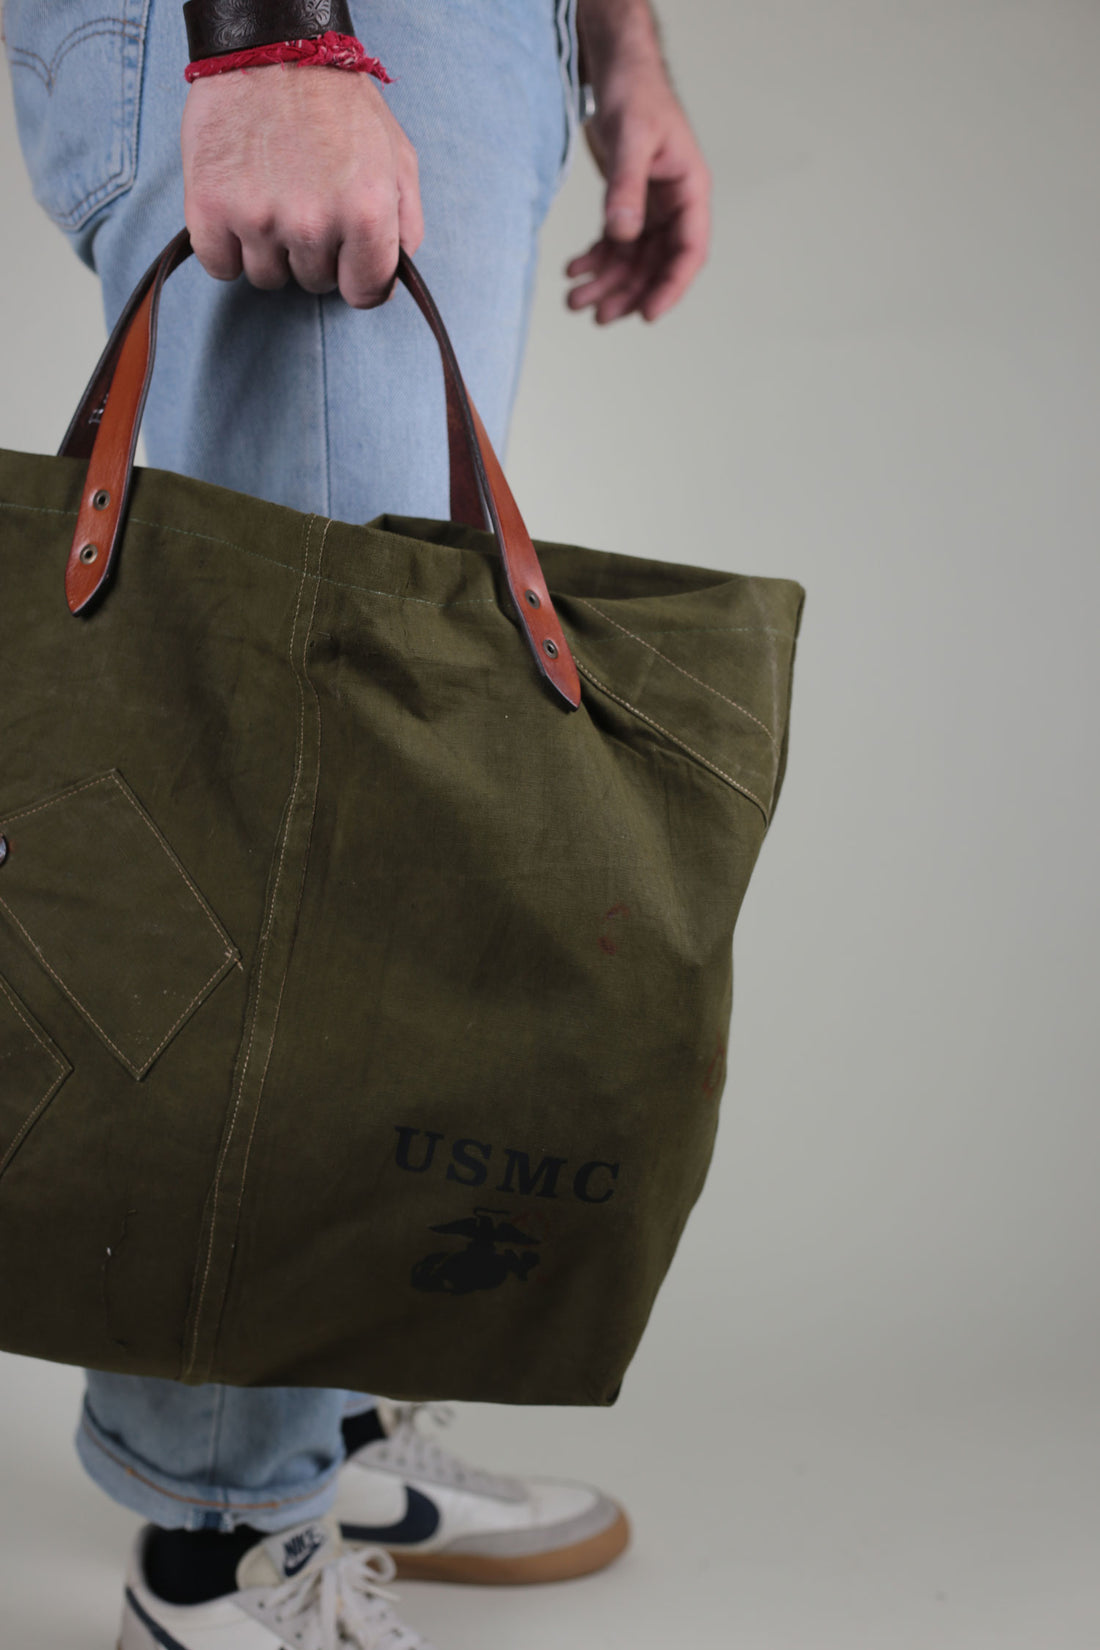 Tote Bag USMC